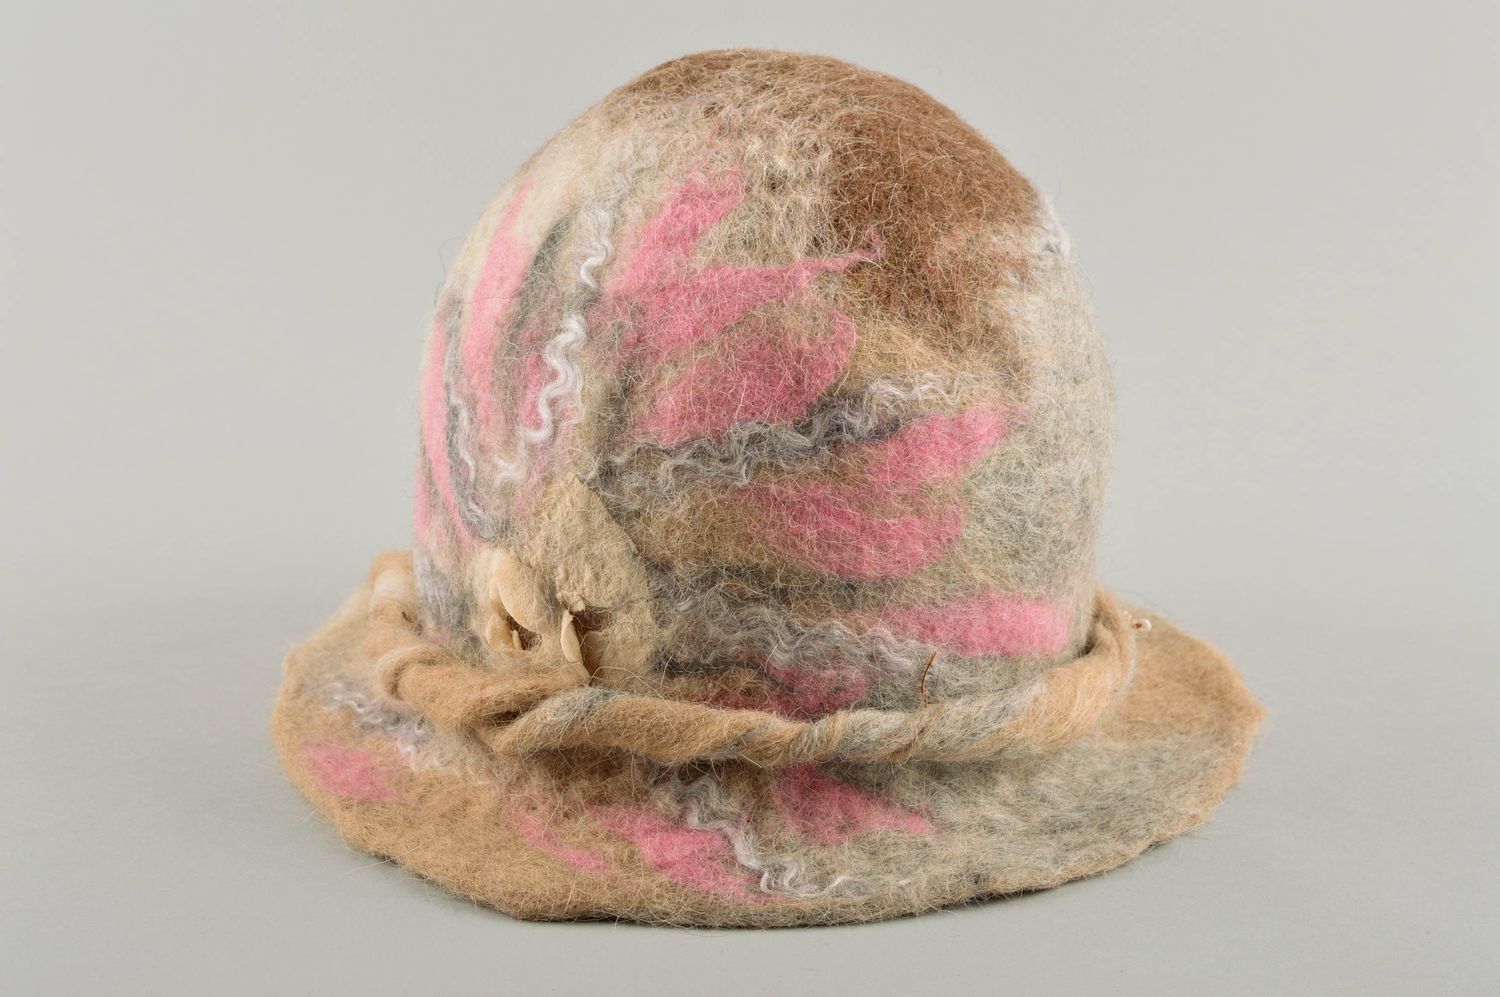 Дамская шляпка ручной работы женский головной убор шляпа с полями модная шляпка фото 5